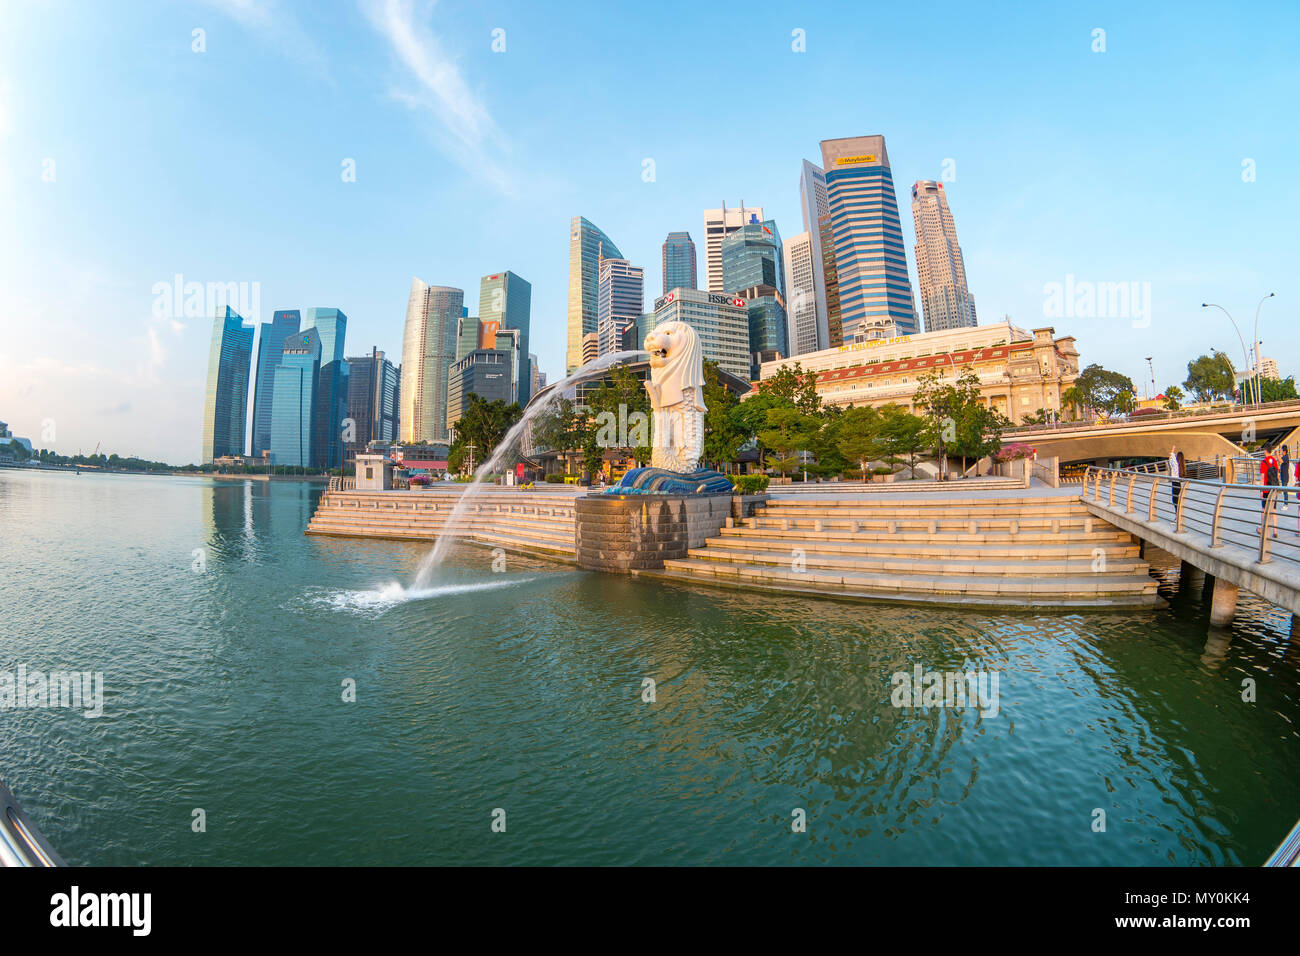 Singapore city, Singapore - April 9, 2018: Sunrise morning in Singapore city, Singapore Stock Photo